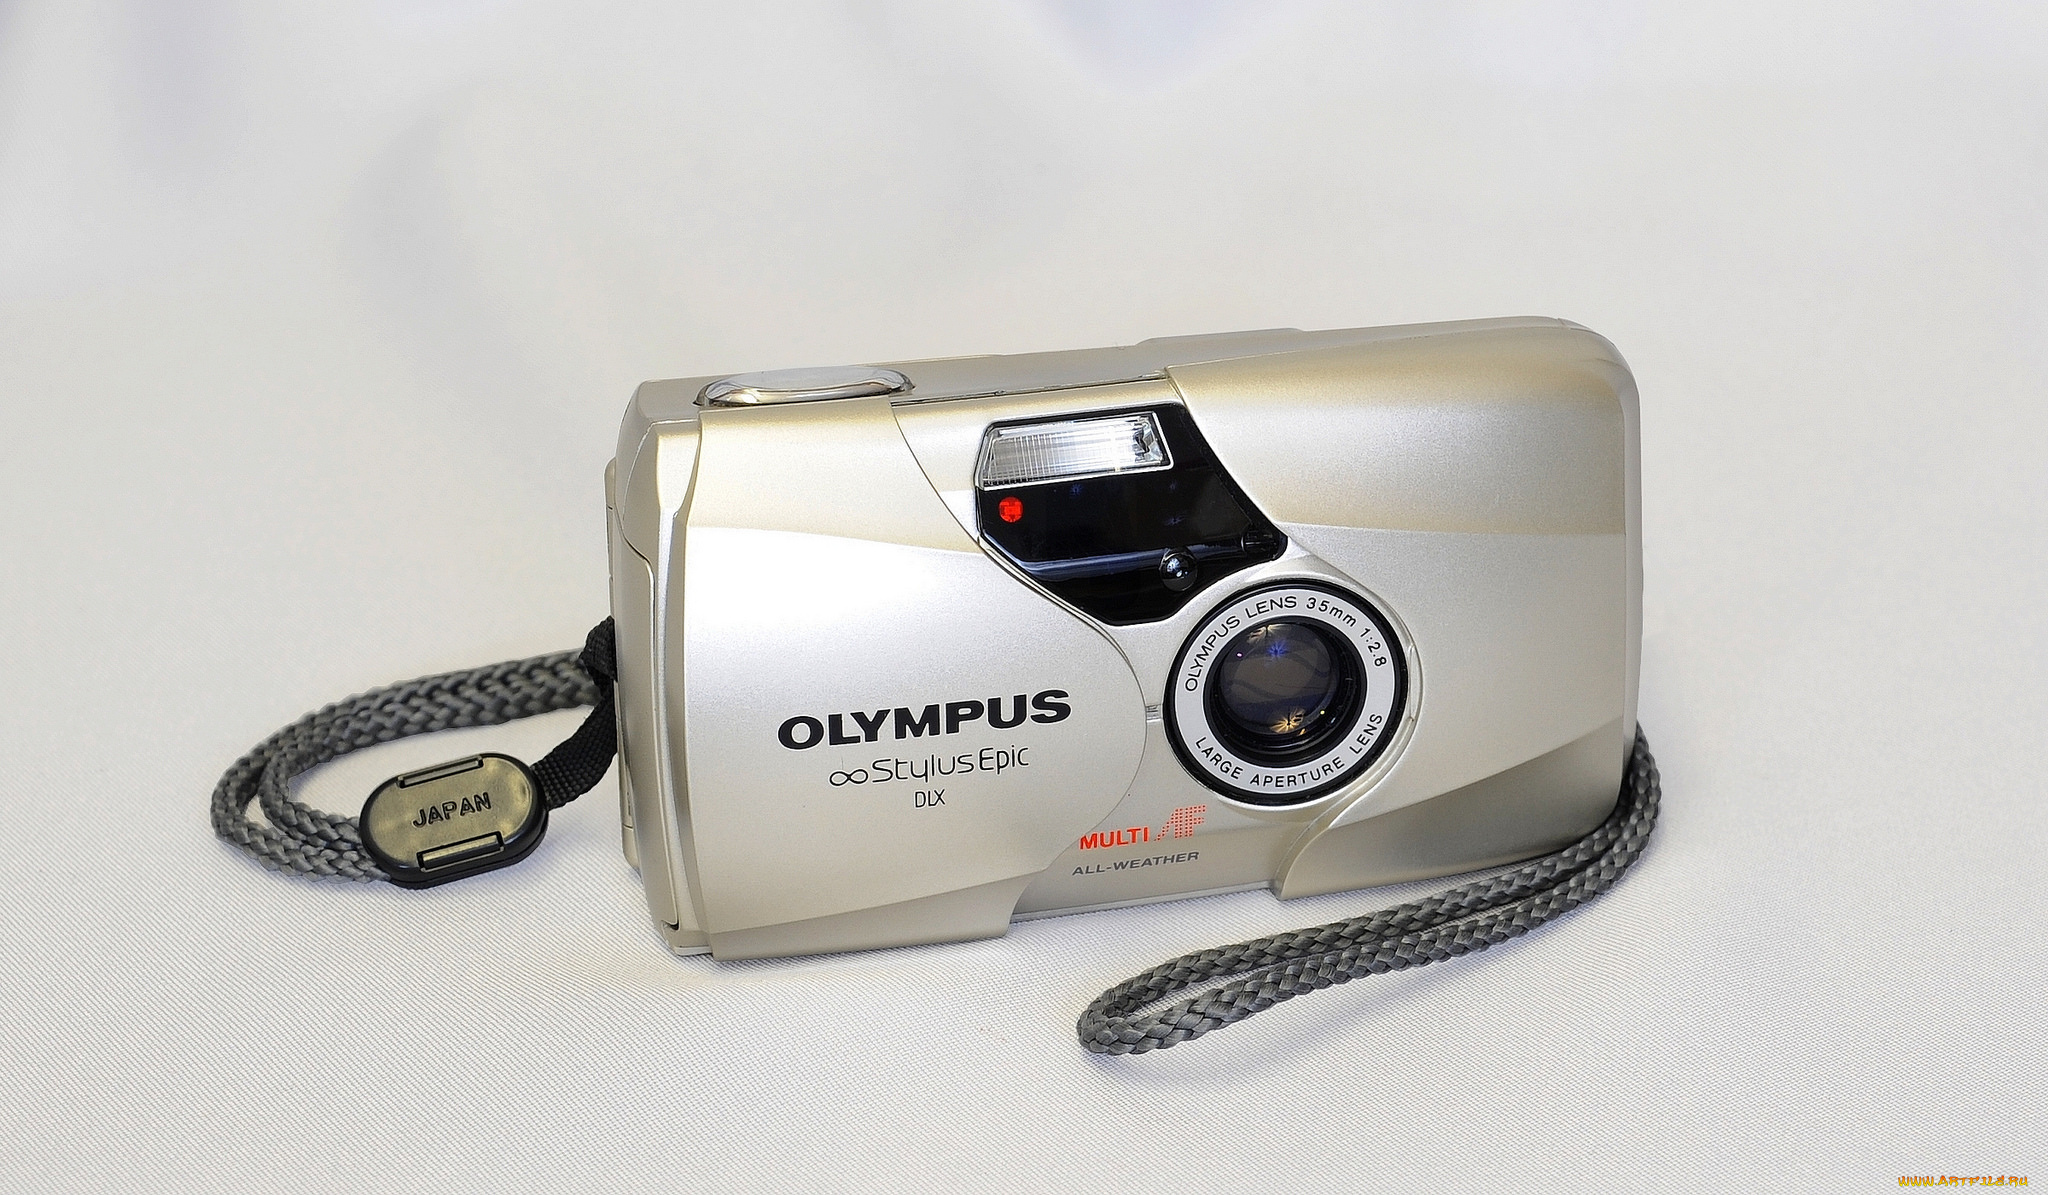 olympus, stylus, epic, dlx, бренды, olympus, фотокамера